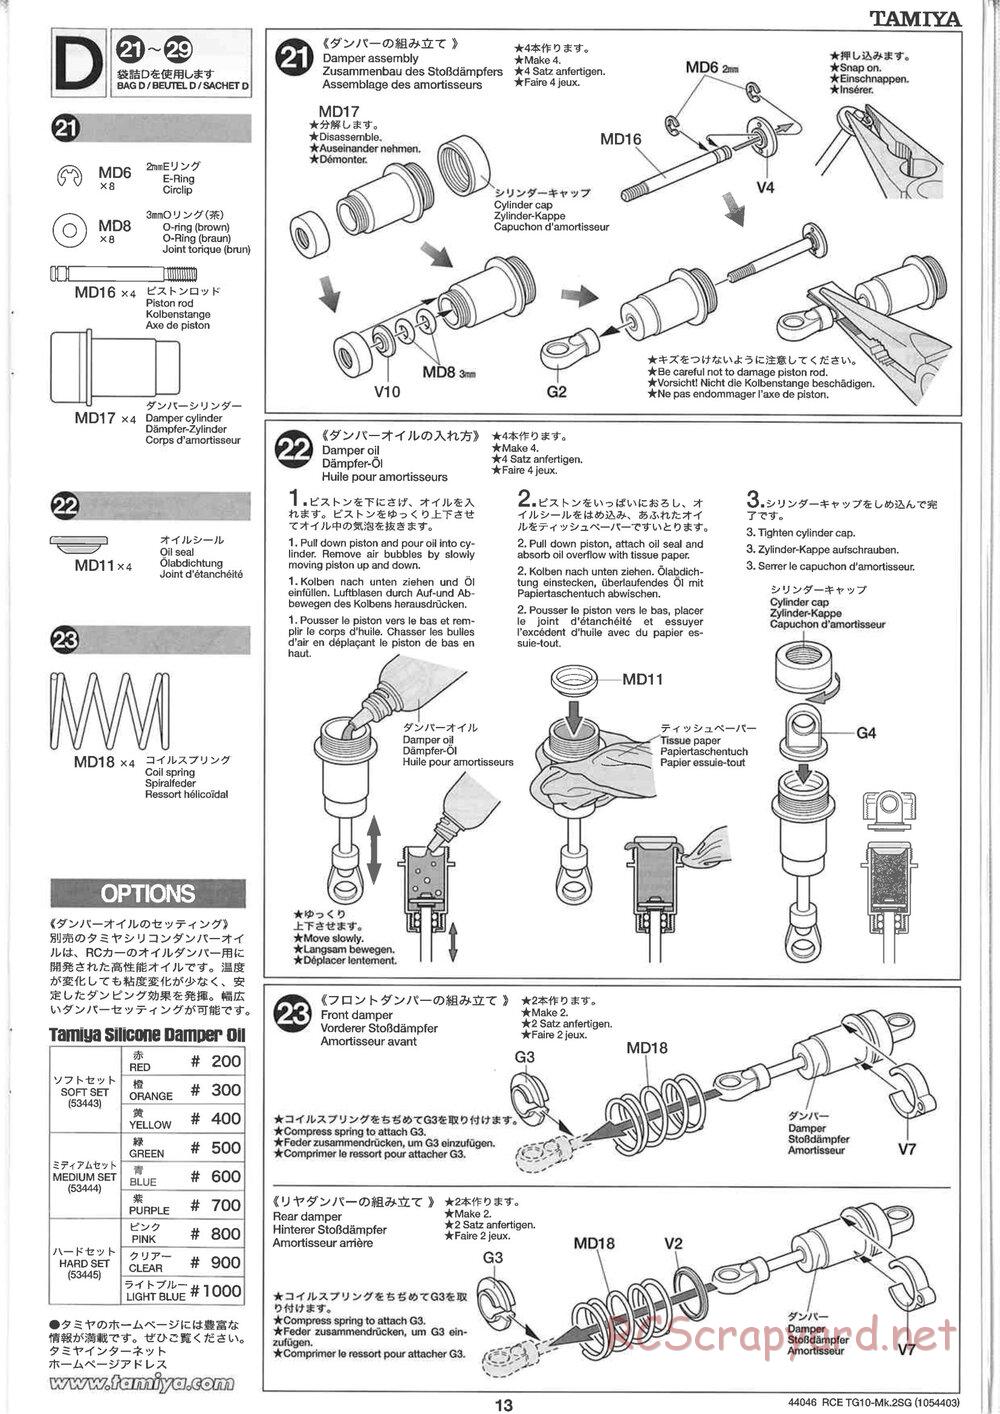 Tamiya - TG10 Mk.2SG Chassis - Manual - Page 13